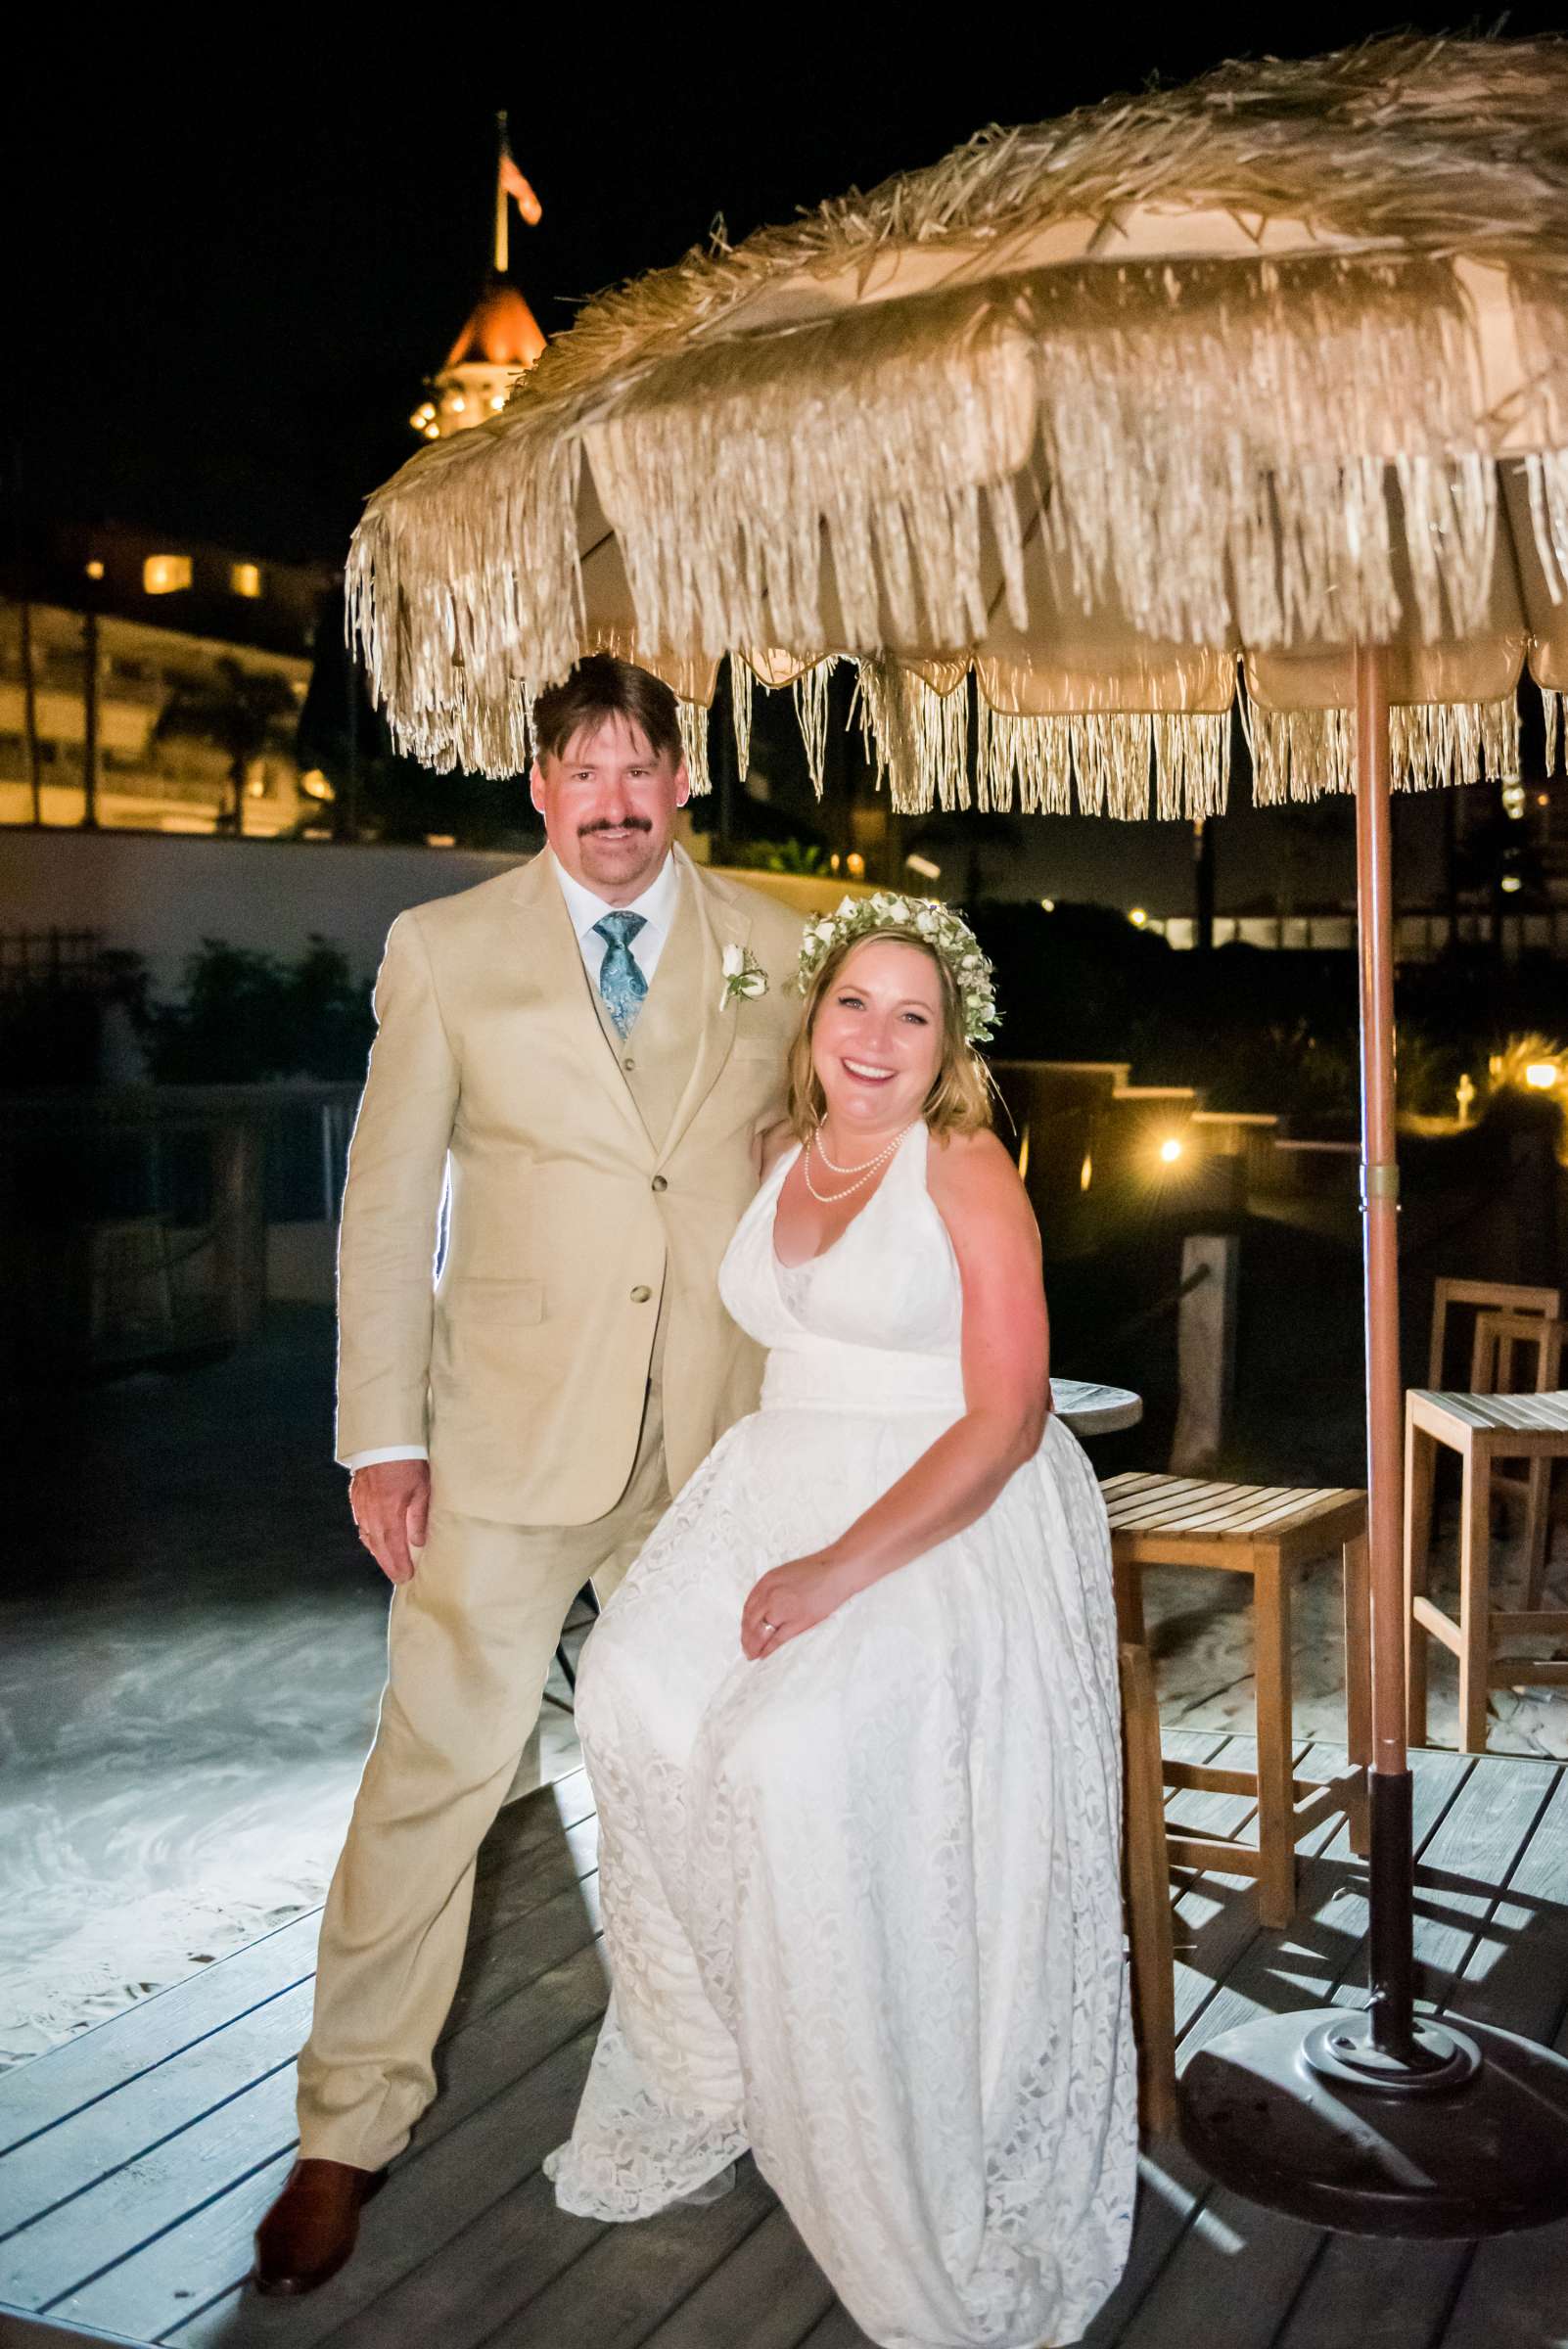 Hotel Del Coronado Wedding, Danielle and Glenn Wedding Photo #76 by True Photography